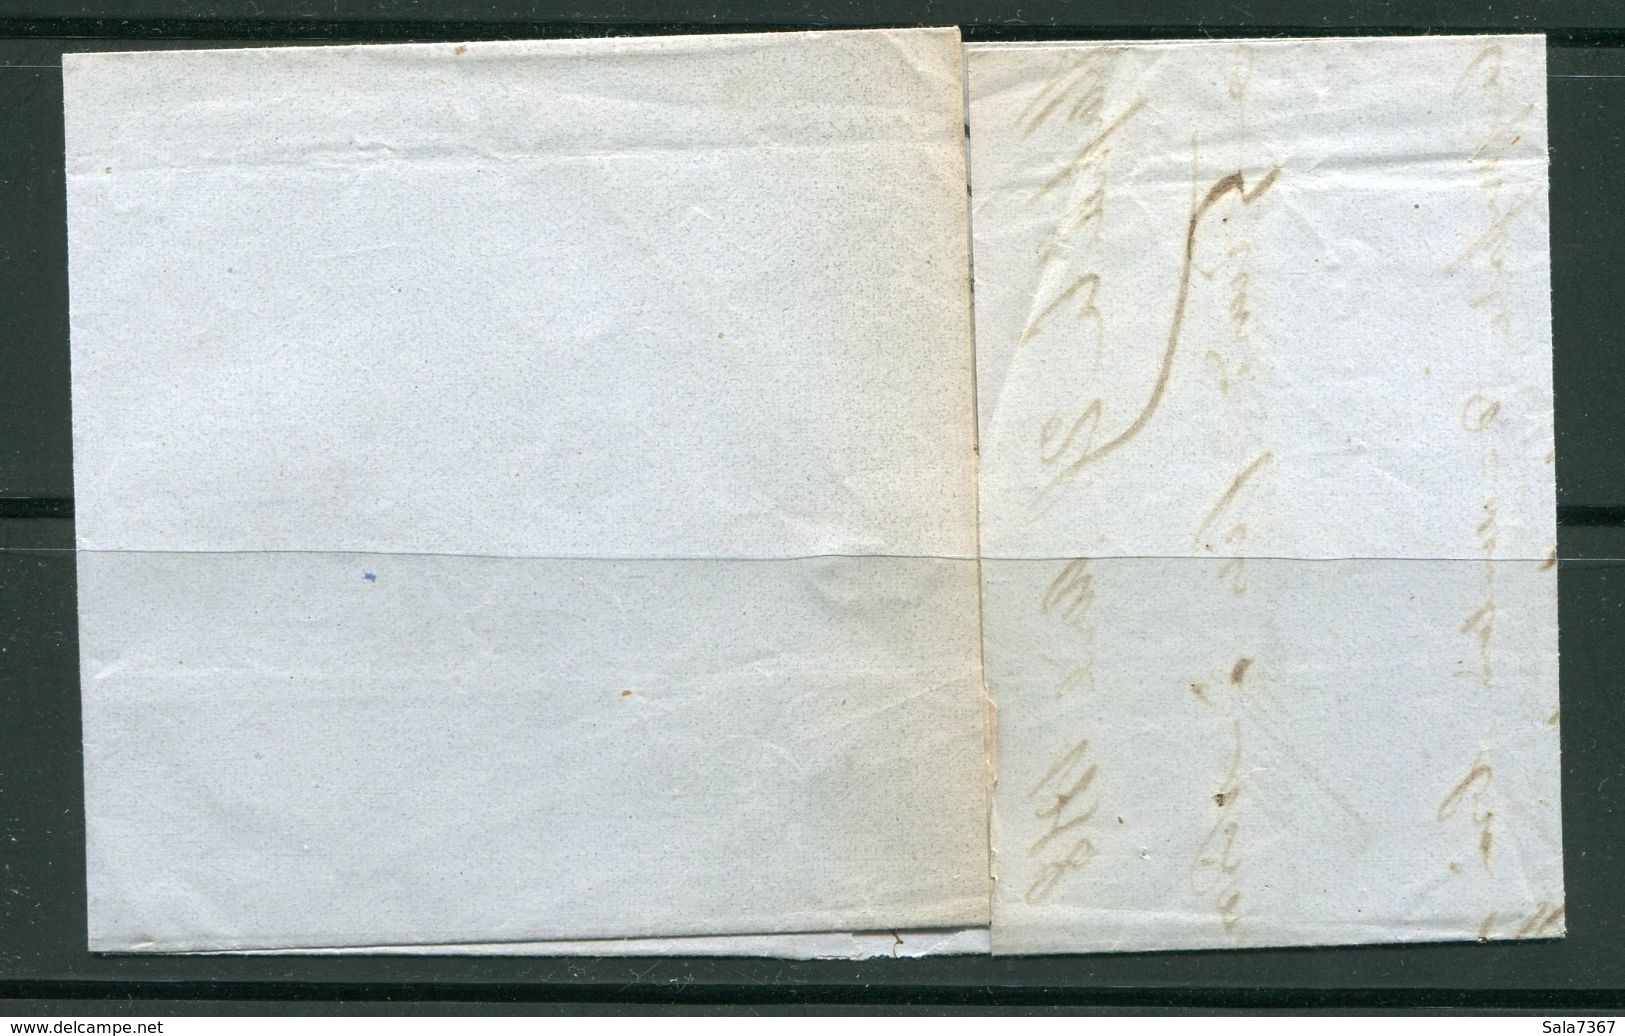 Lettre Du 26 Avril 1858 De MARSEILLE à LYON- Ambulant  ML 1°- Timbre Y&T N°14A - 1852 Louis-Napoleon